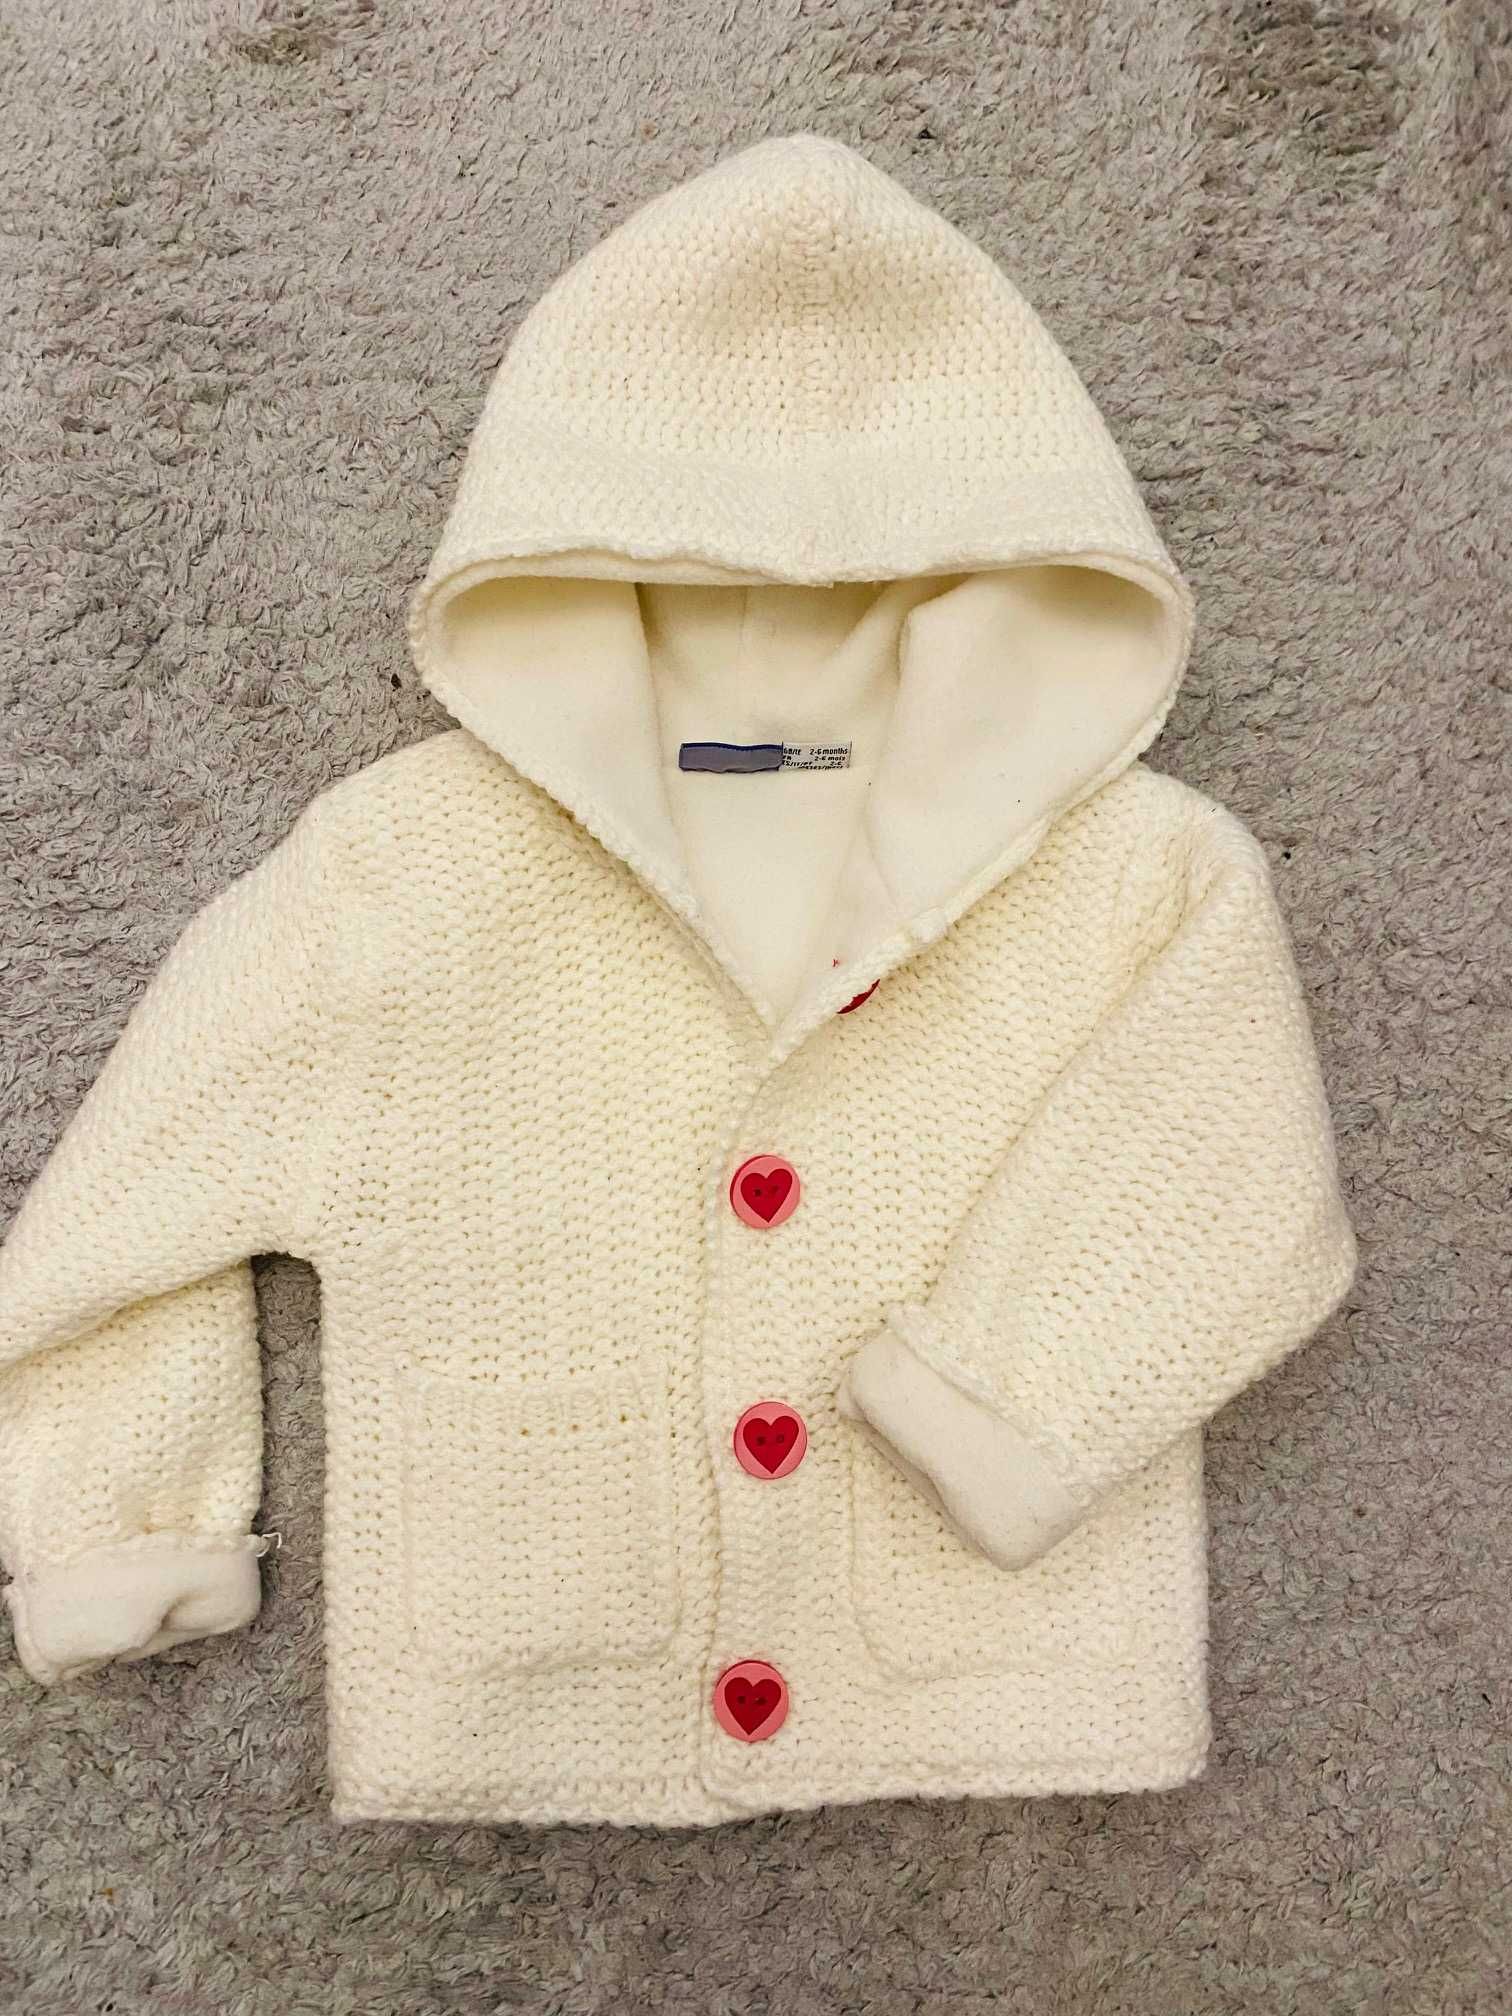 Gruby biały sweterek kurteczka wiosenna dla dziewczynki 62-68